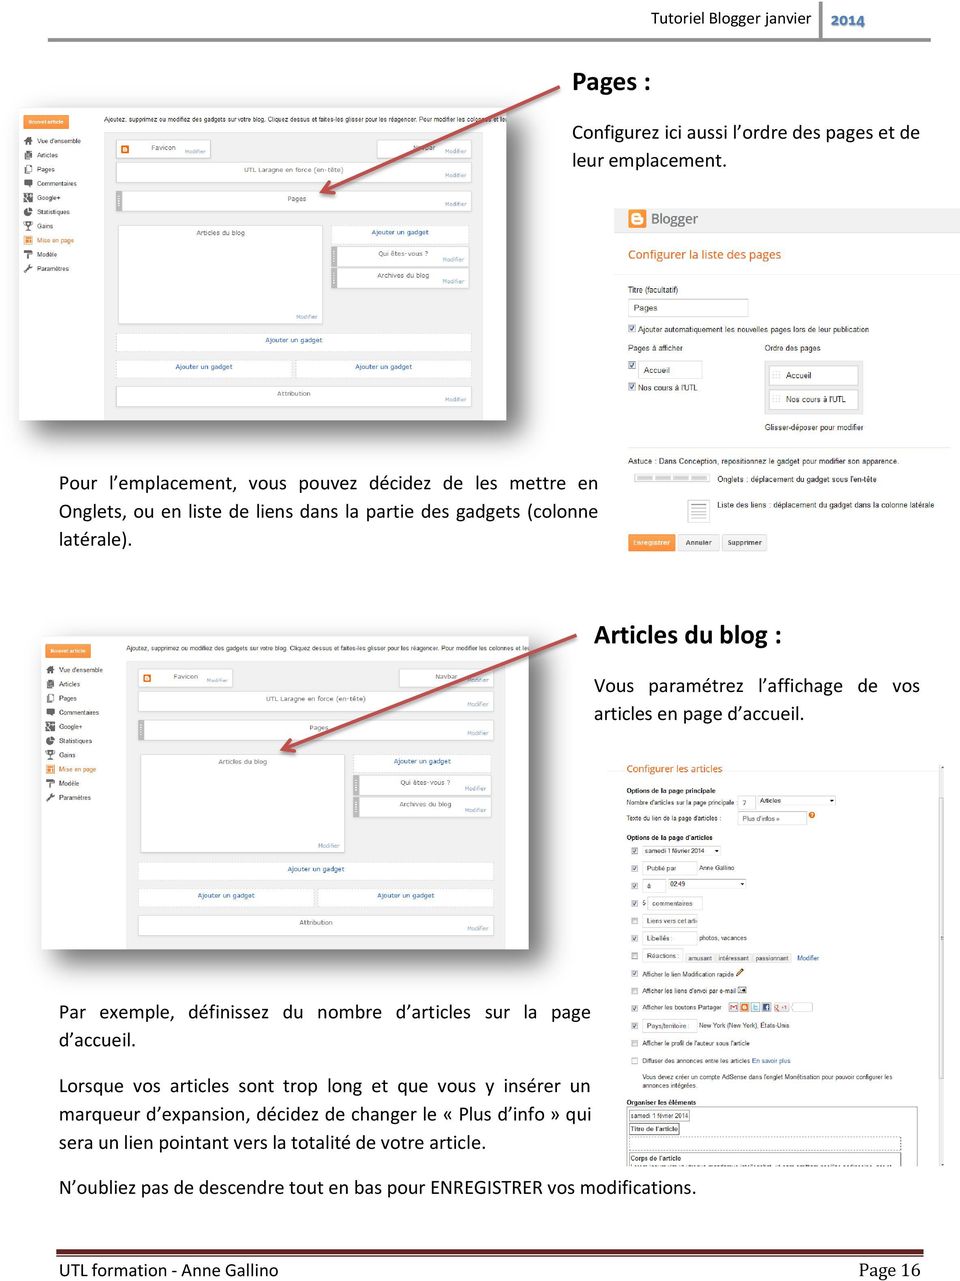 Articles du blog : Vous paramétrez l affichage de vos articles en page d accueil. Par exemple, définissez du nombre d articles sur la page d accueil.